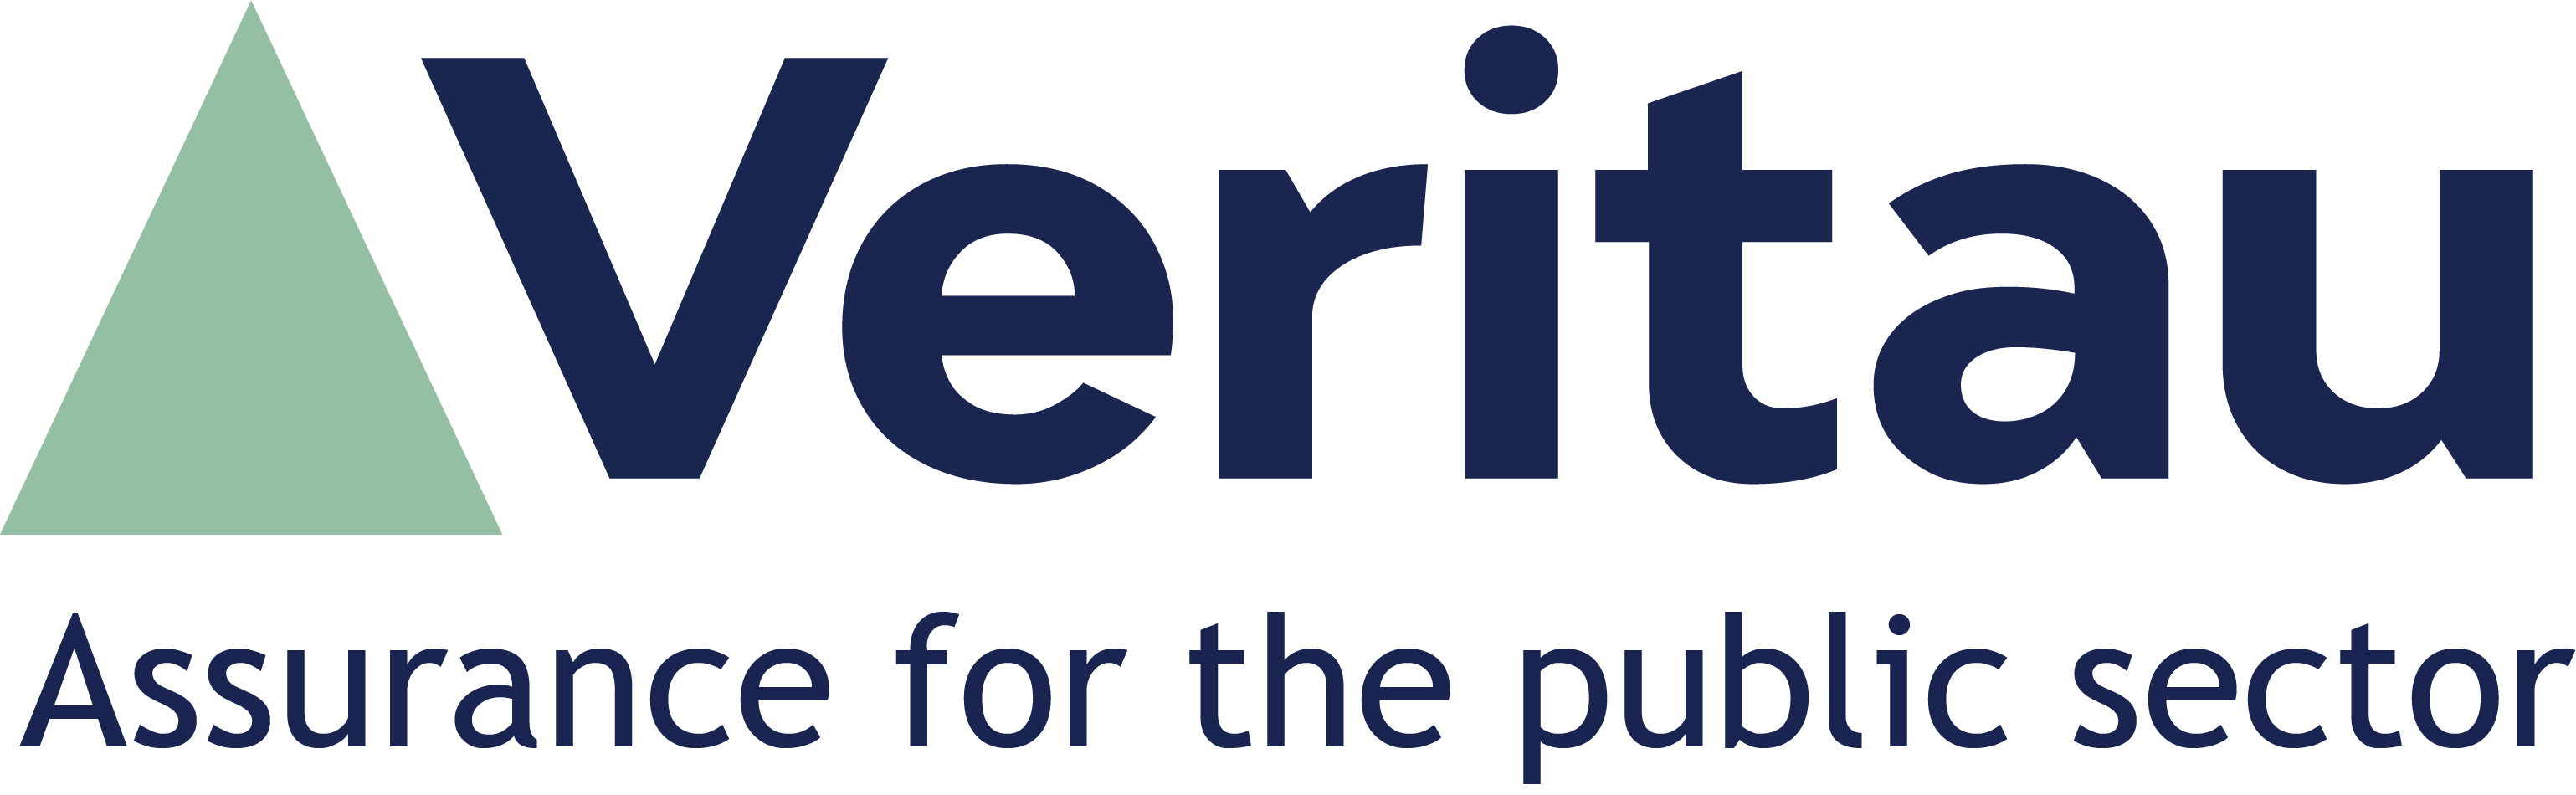 logo for Veritau